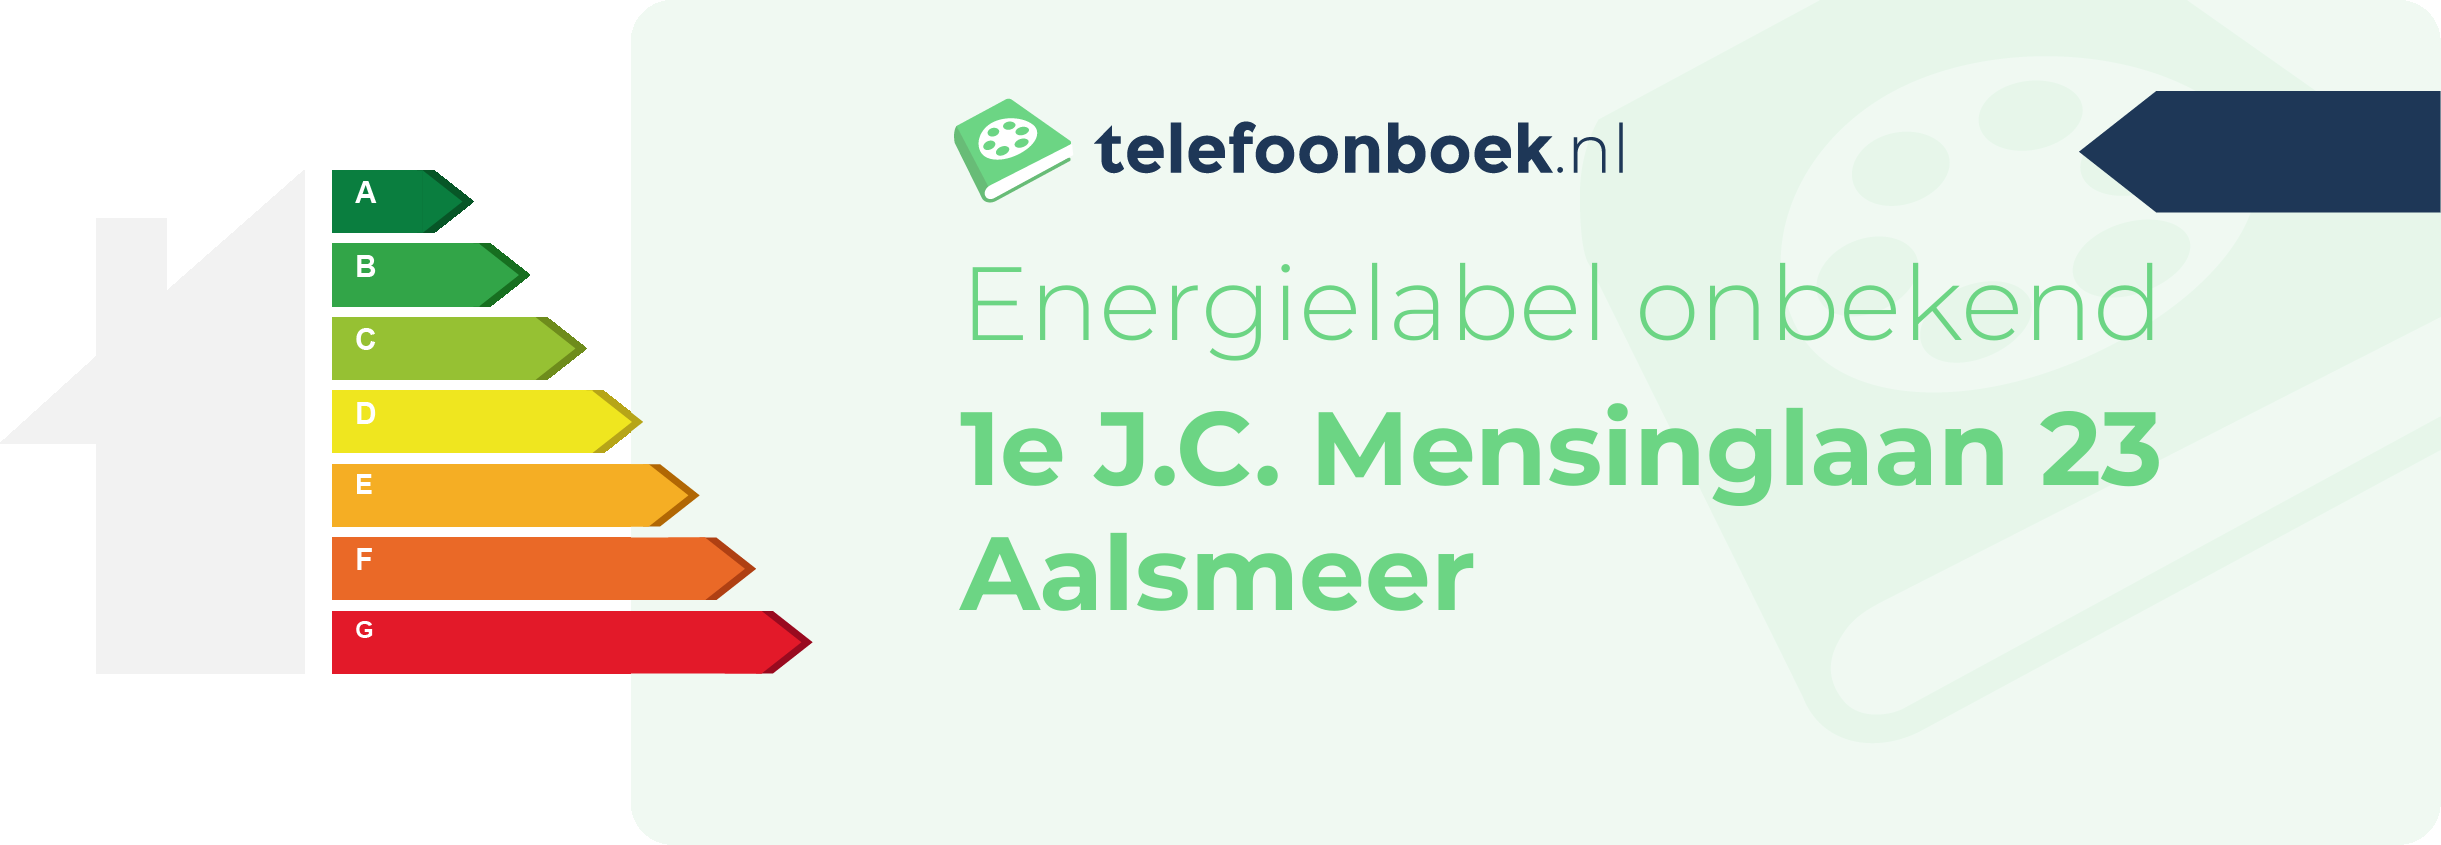 Energielabel 1e J.C. Mensinglaan 23 Aalsmeer